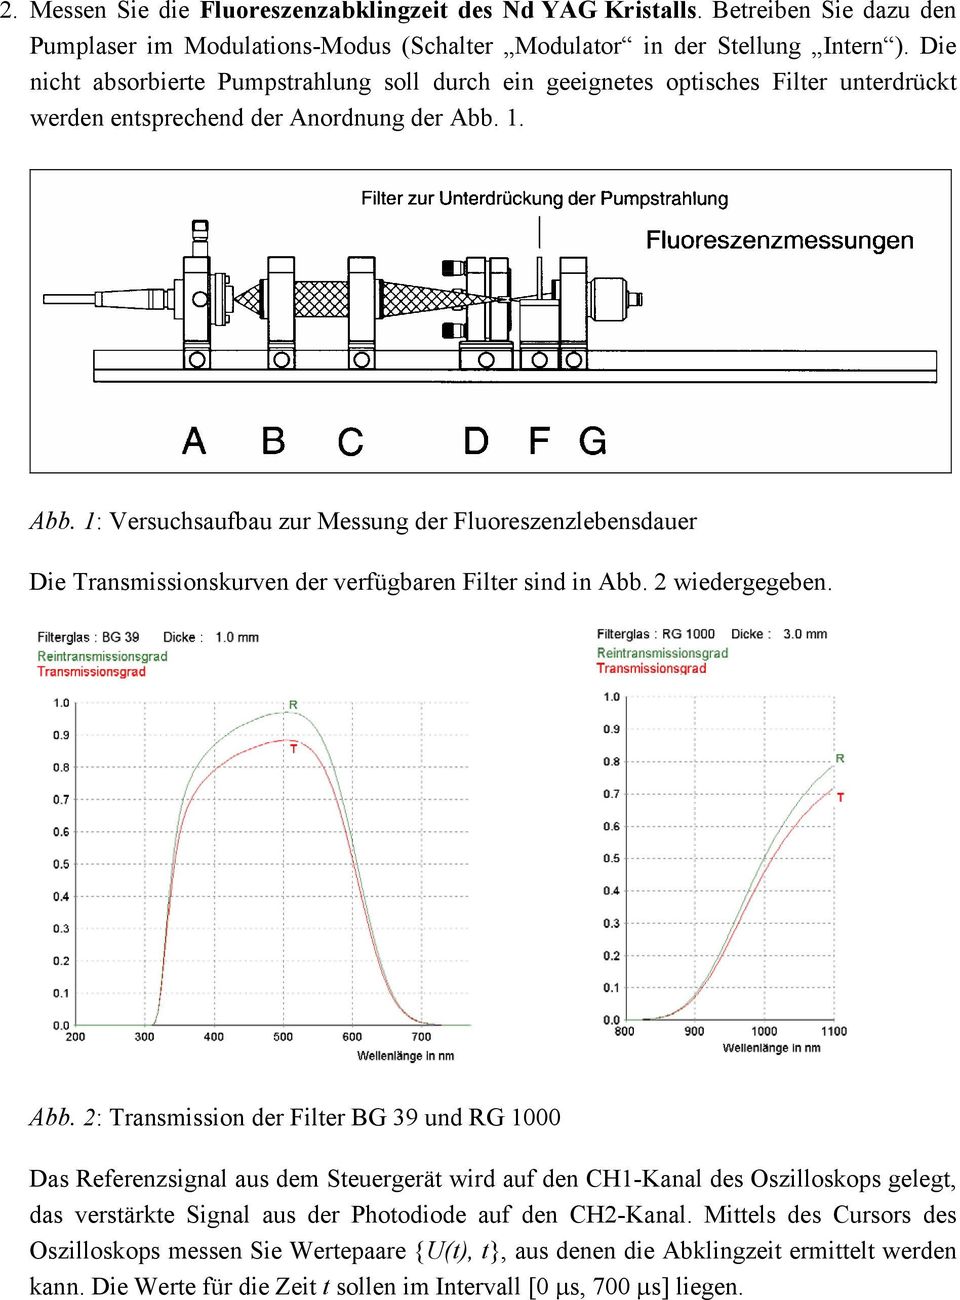 1. Abb. 1: Versuchsaufbau zur Messung der Fluoreszenzlebensdauer Die Transmissionskurven der verfügbaren Filter sind in Abb. 2 wiedergegeben. Abb. 2: Transmission der Filter BG 39 und RG 1000 Das Referenzsignal aus dem Steuergerät wird auf den CH1-Kanal des Oszilloskops gelegt, das verstärkte Signal aus der Photodiode auf den CH2-Kanal.